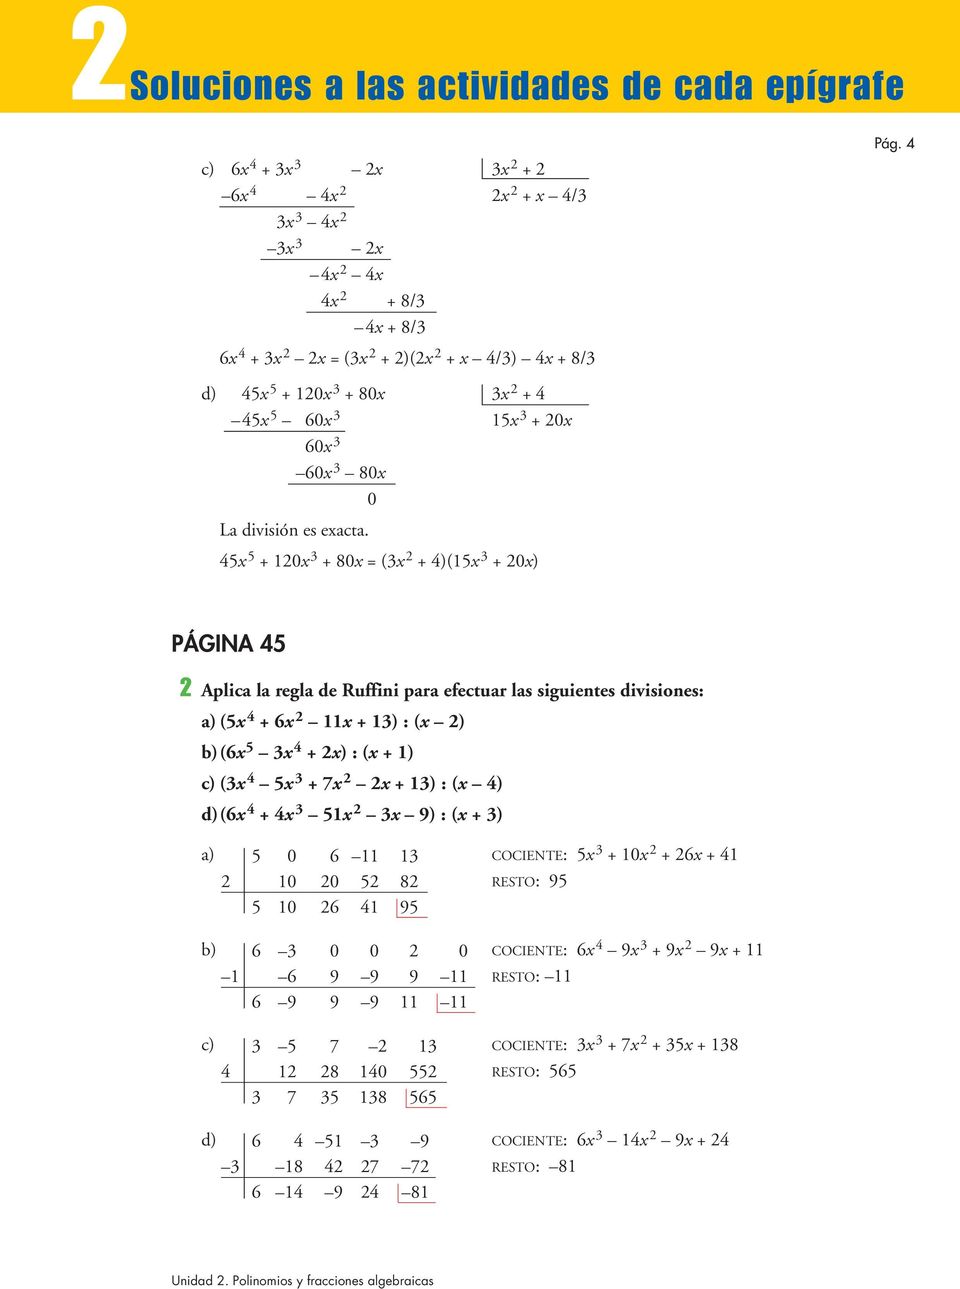 45 5 + 20 3 +80 (3 2 + 4)(5 3 +20) PÁGINA 45 2 Aplica la regla de Ruffini para efectuar las siguientes divisiones: (5 4 + 6 2 + 3) : ( 2) (6 5 3 4 + 2) : ( + ) (3 4 5 3 + 7 2